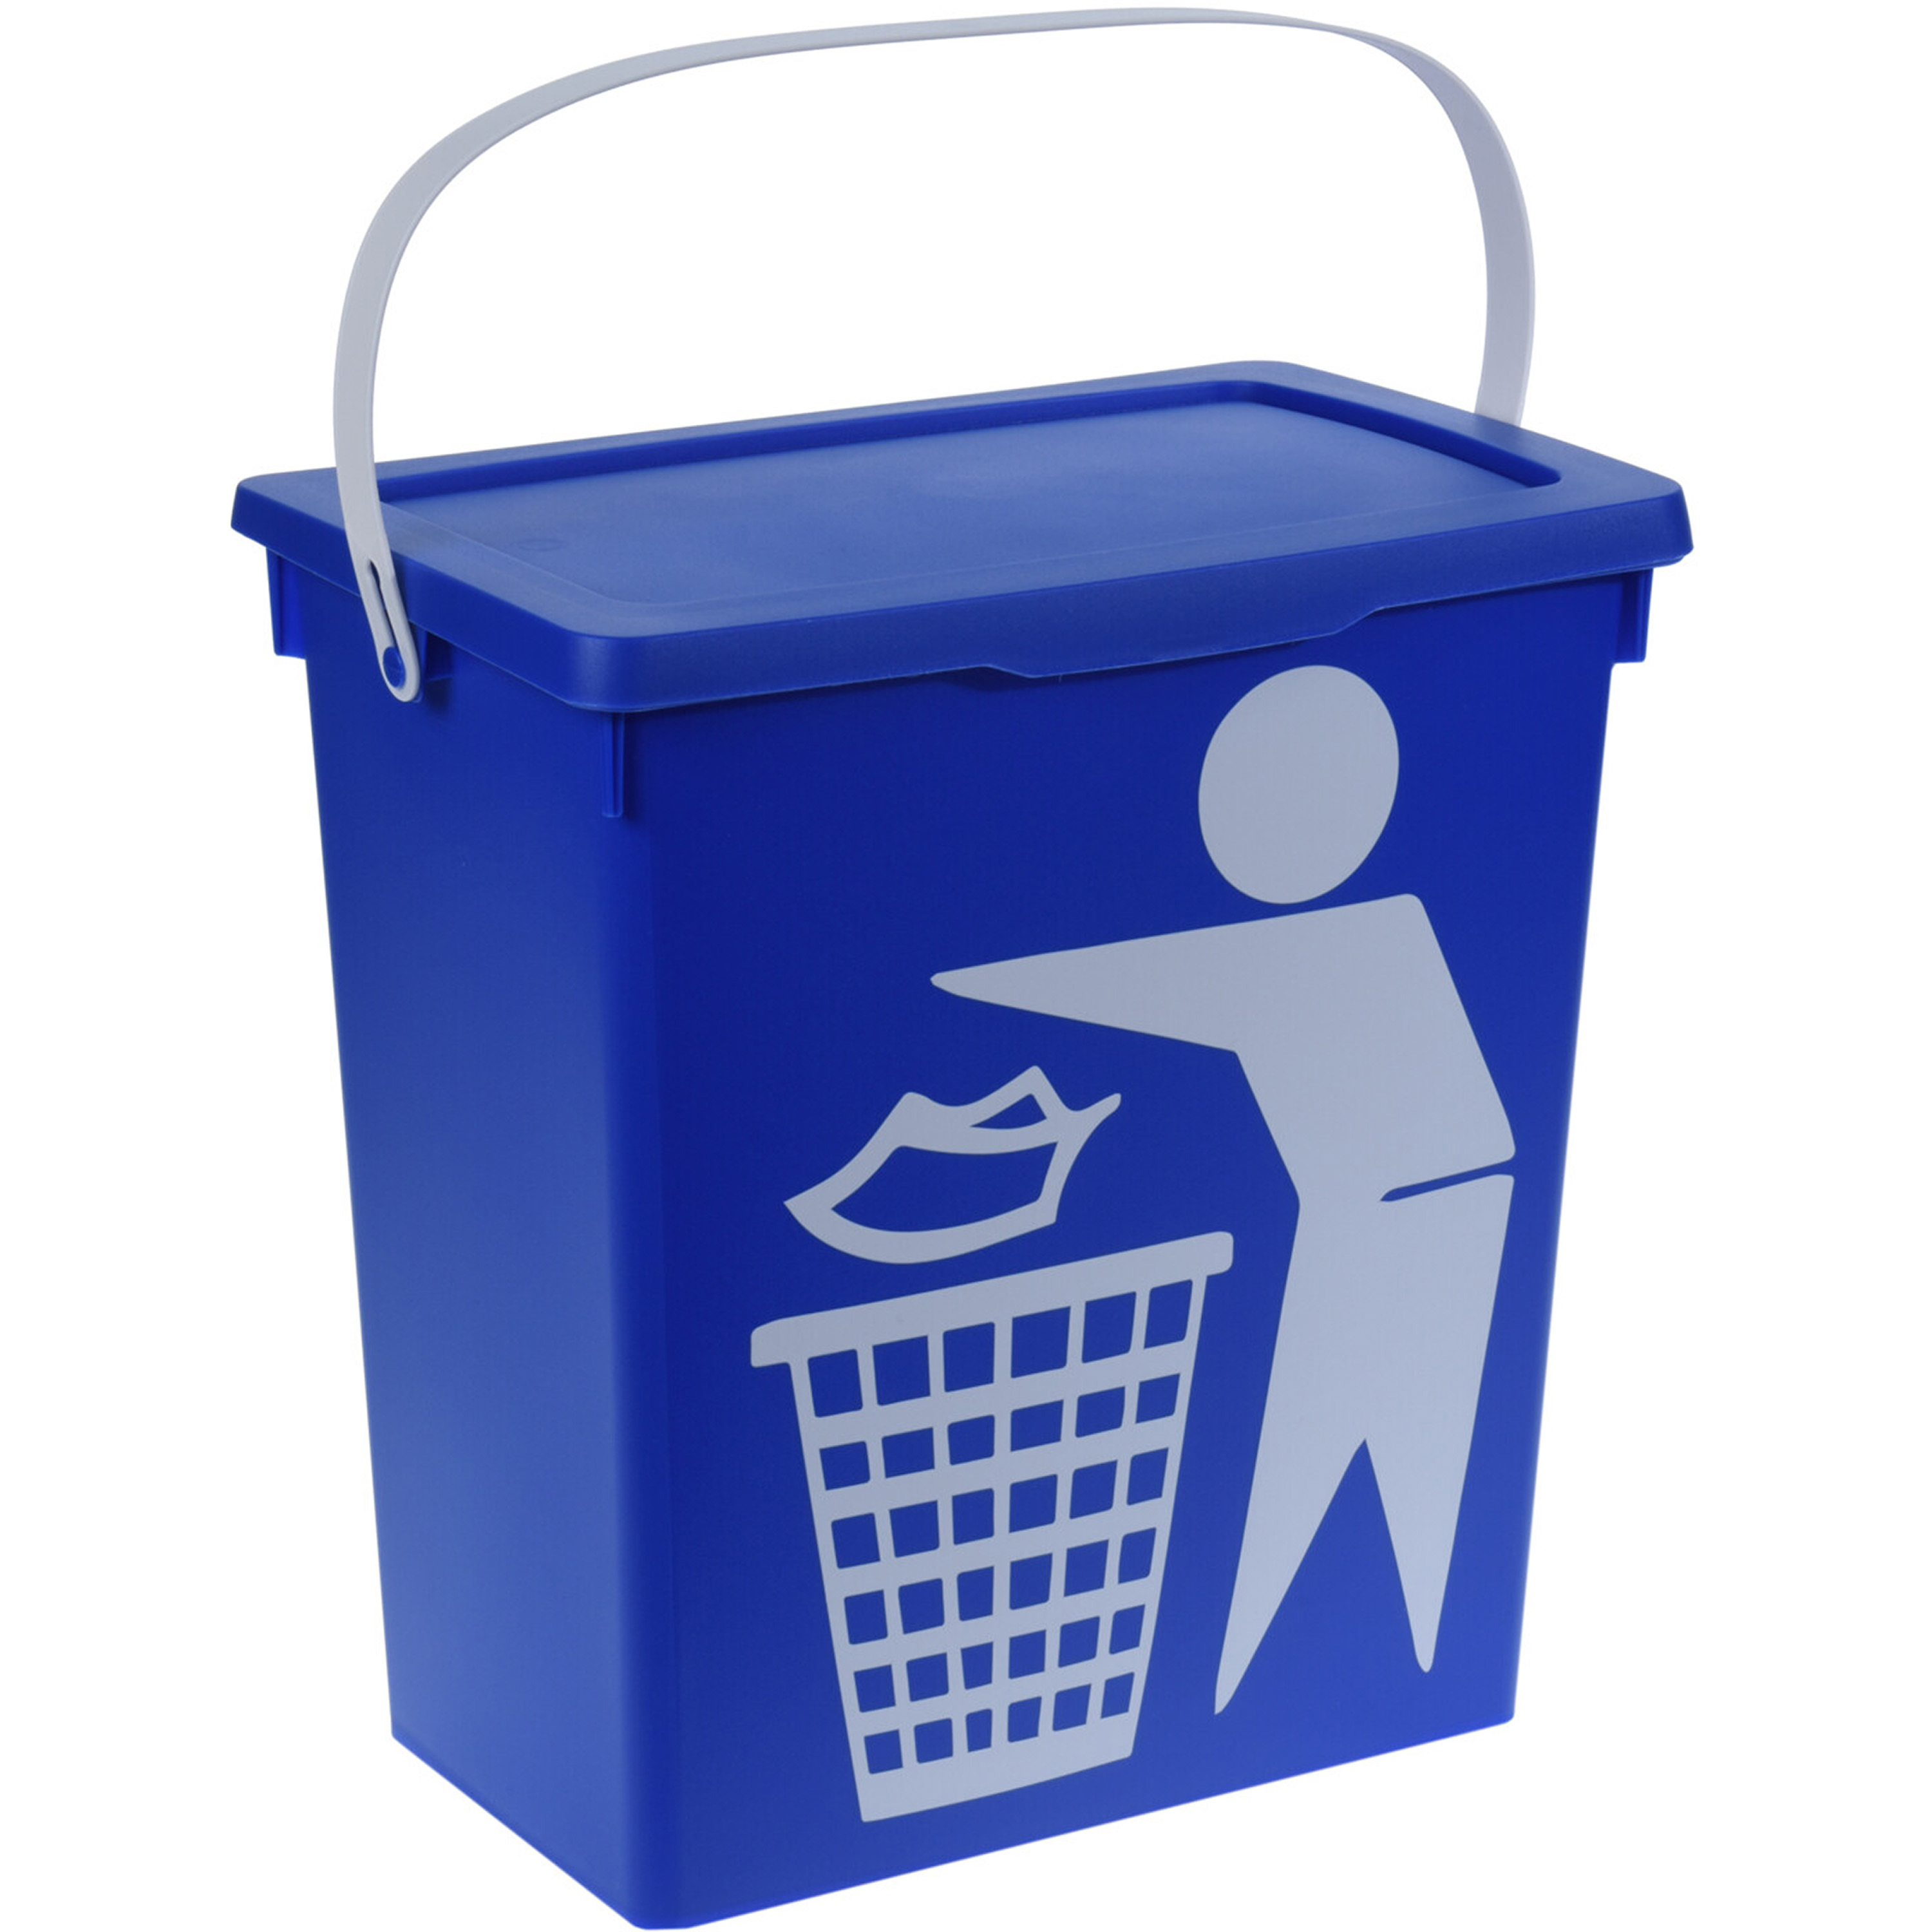 Excellent Houseware Gft afvalbakje voor aanrecht 12L blauw afsluitbaar compostbakje